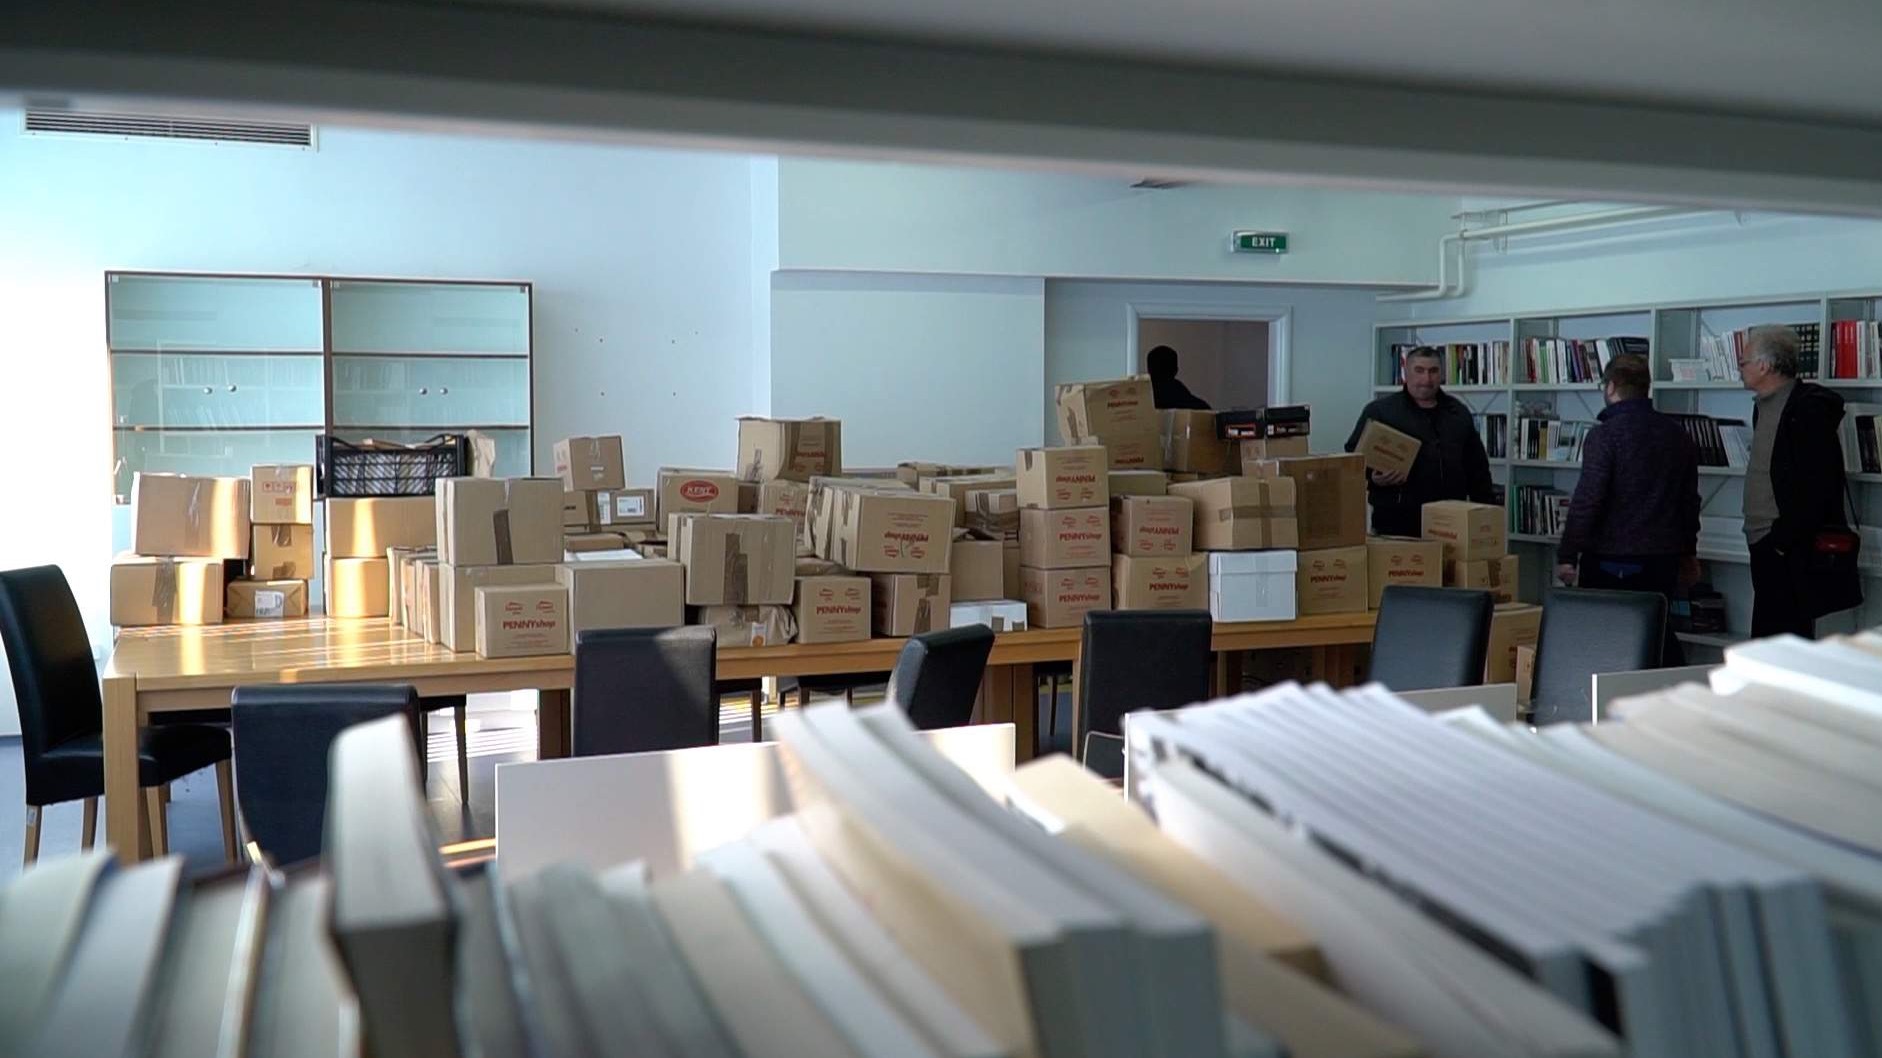 Media centar IZ uručio najveću donaciju knjiga biblioteci u Potočarima (VIDEO)